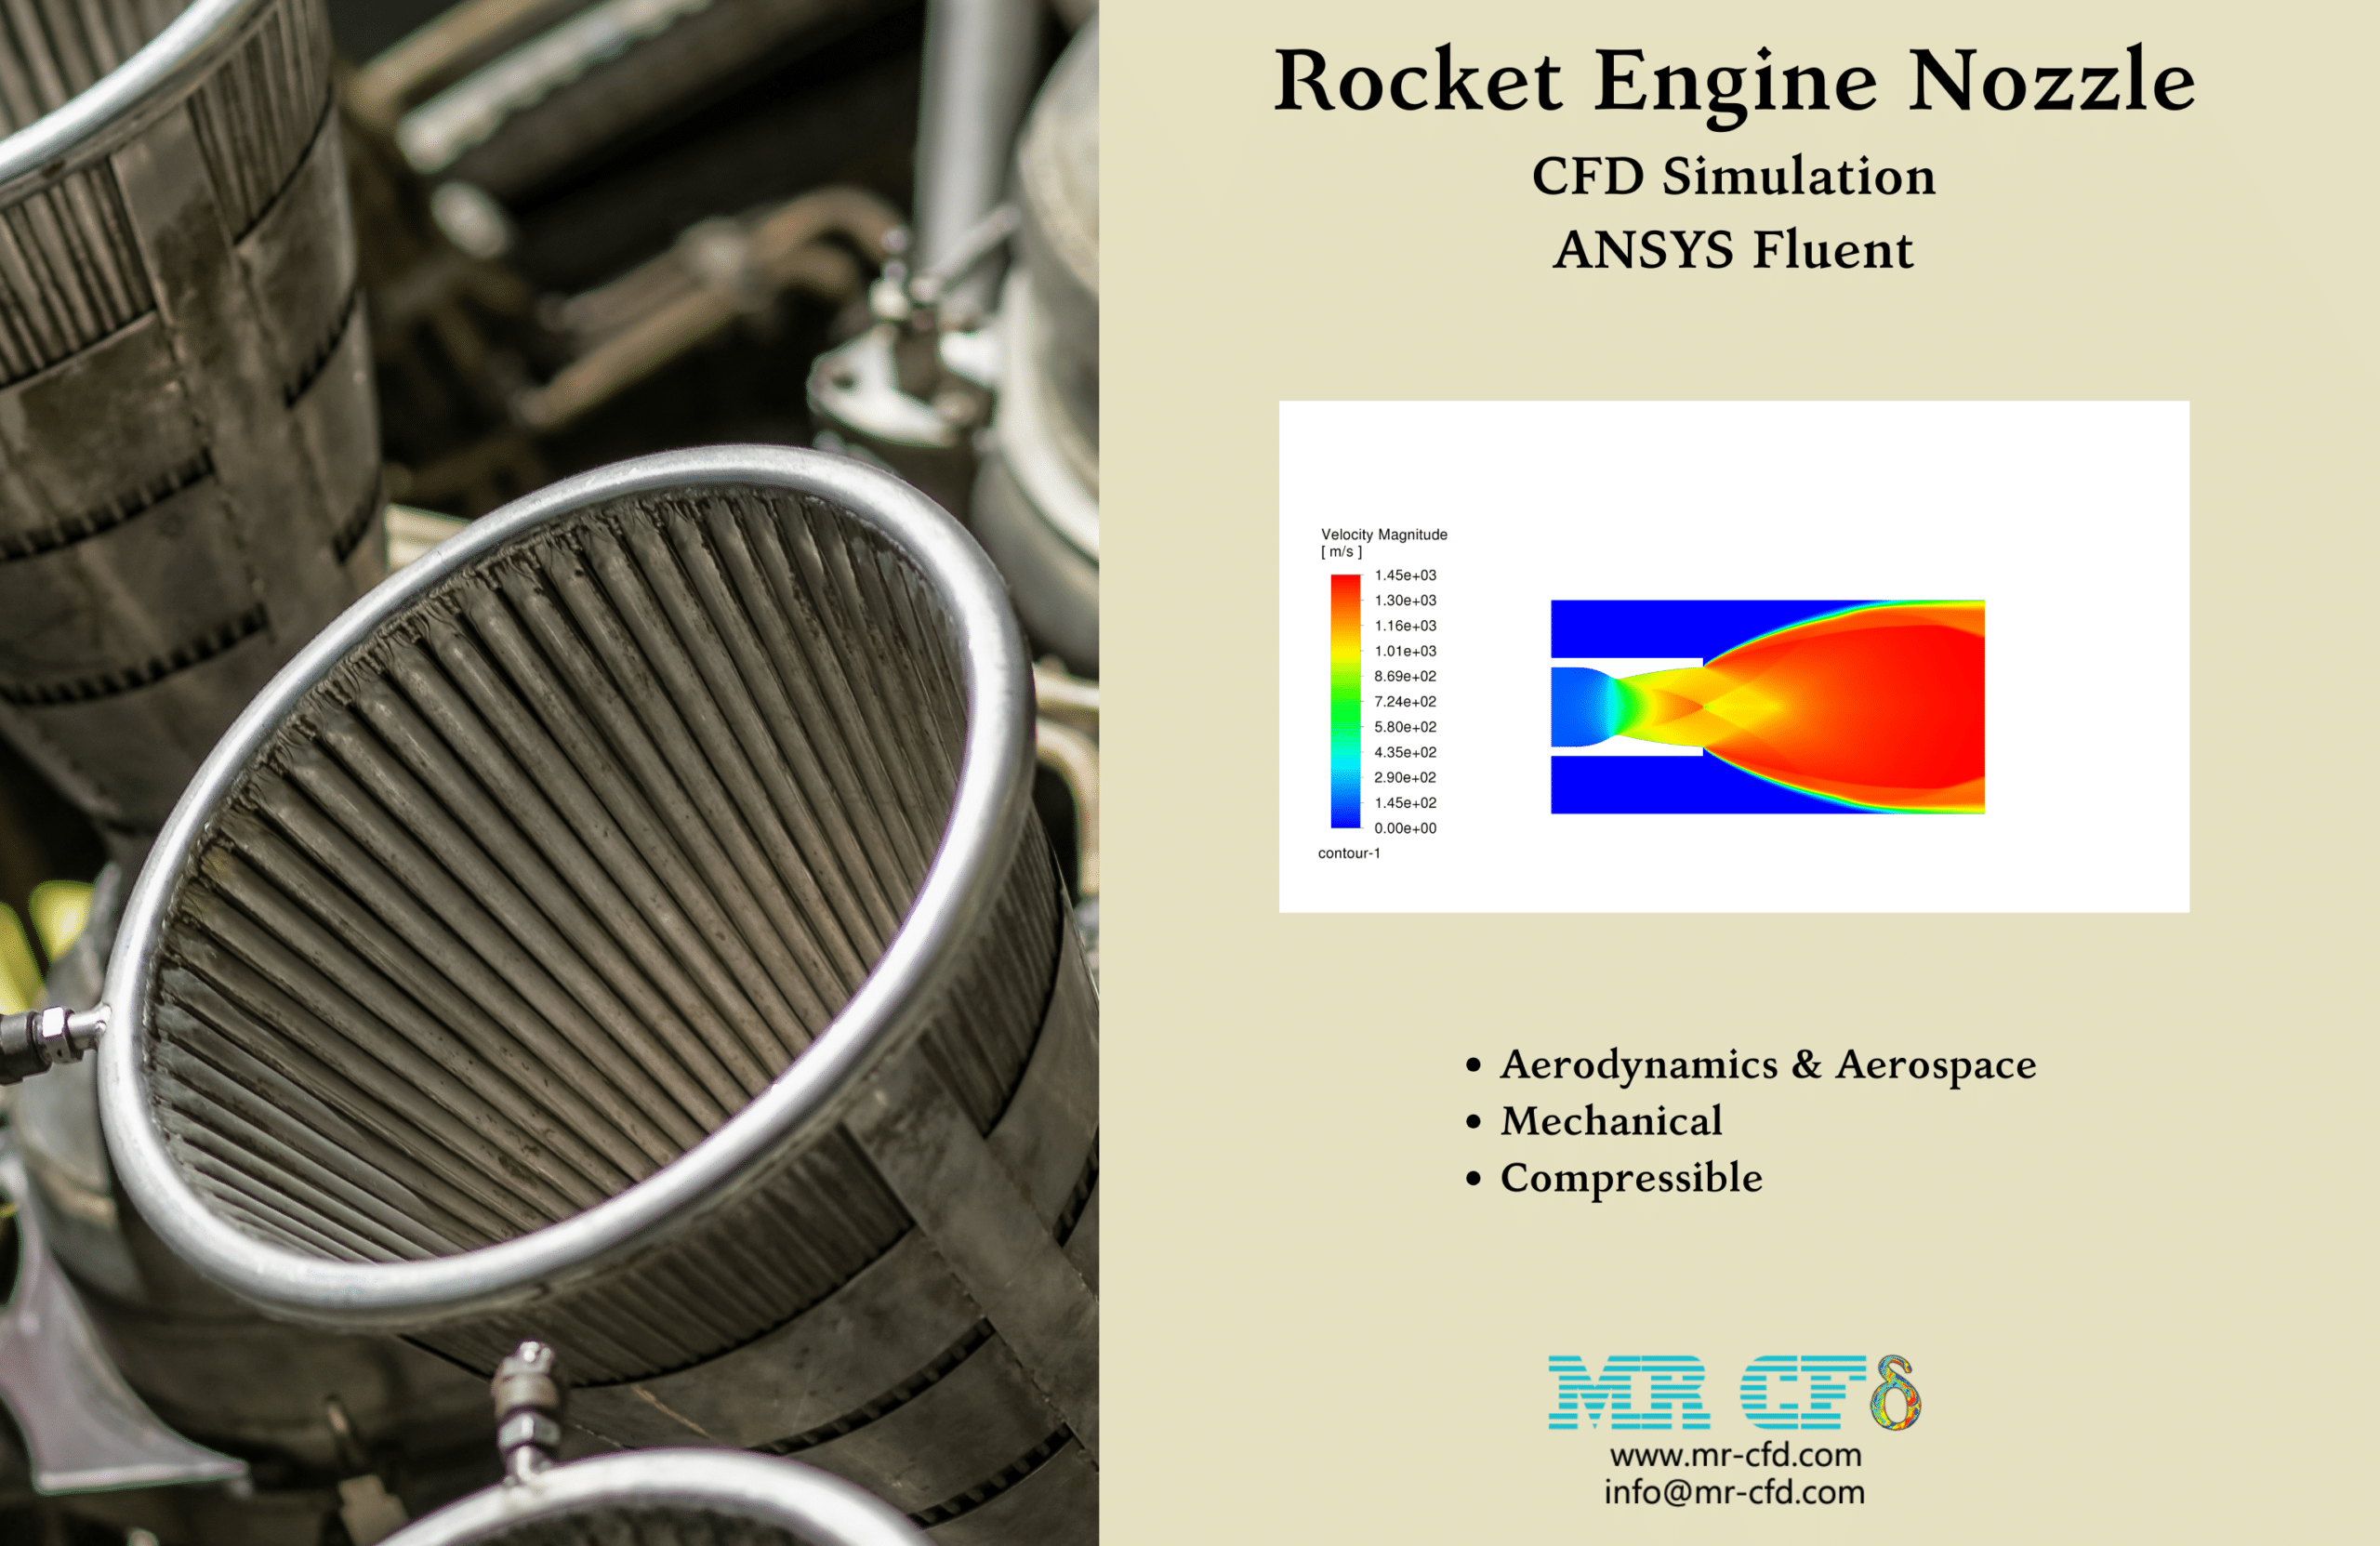 Rocket Engine Nozzle CFD Simulation Training